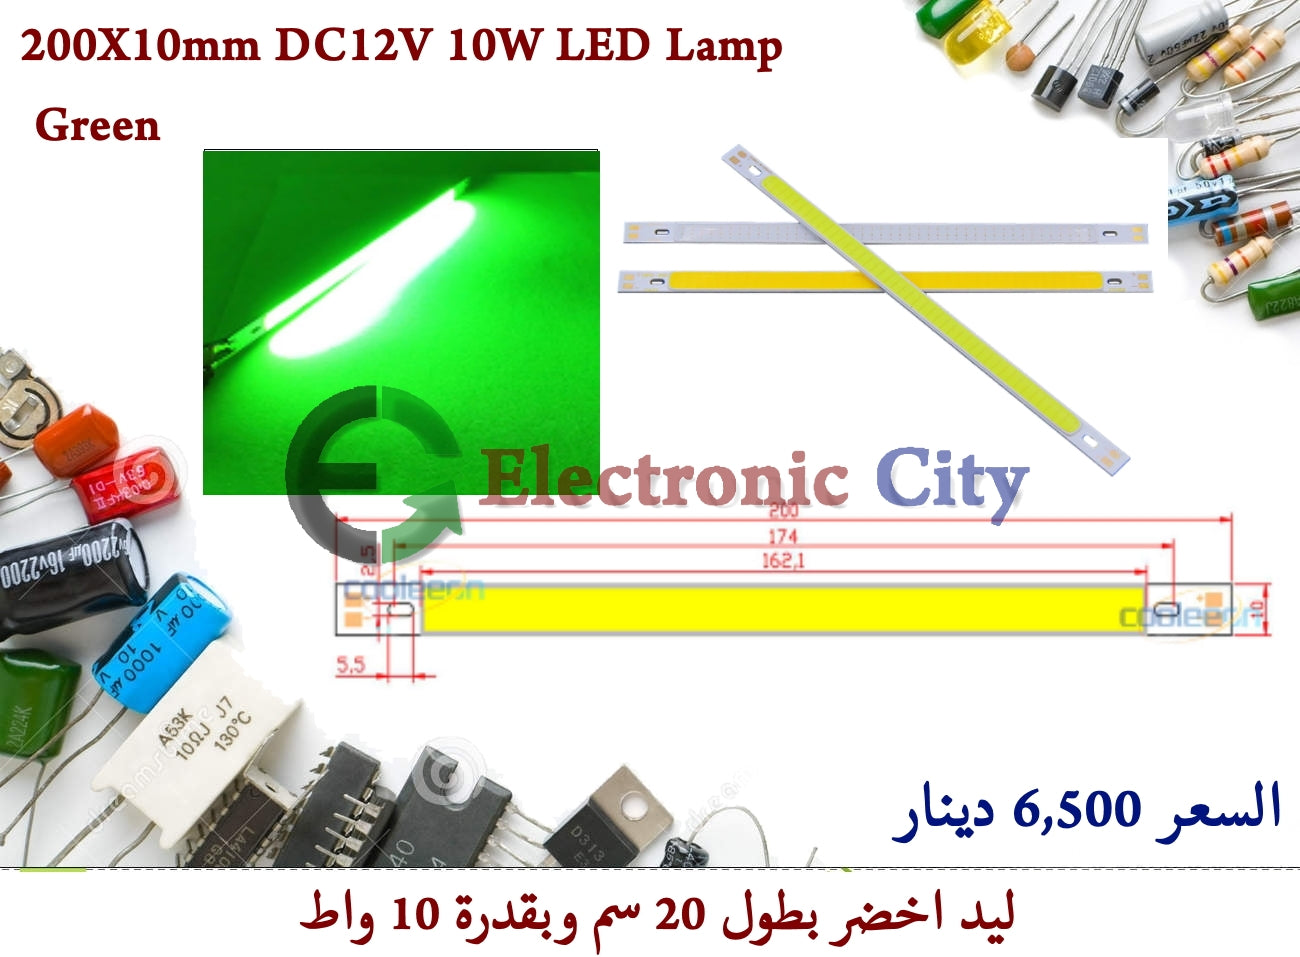 200X10mm DC12V 10W LED Lamp Green